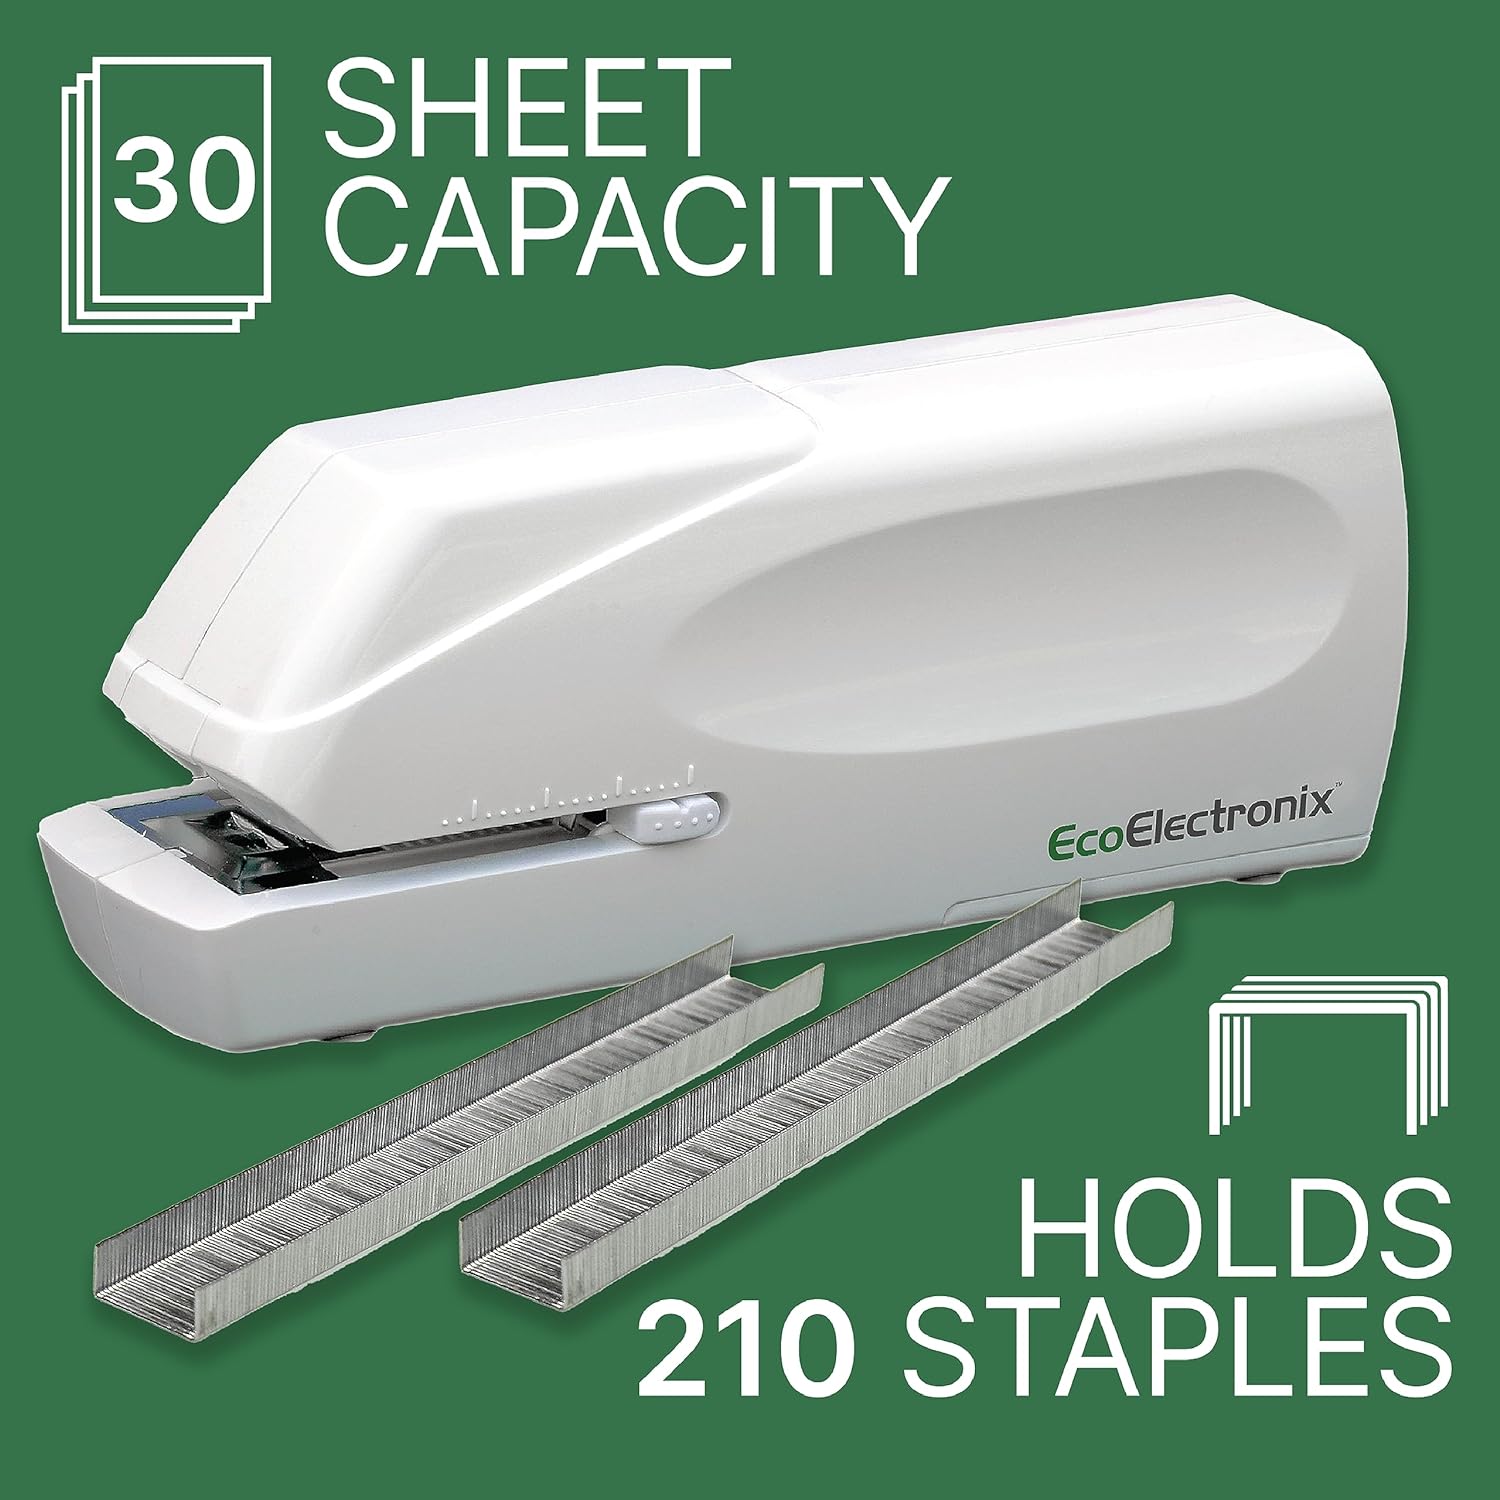 Eco Electronix StaplePro white sheet capacity